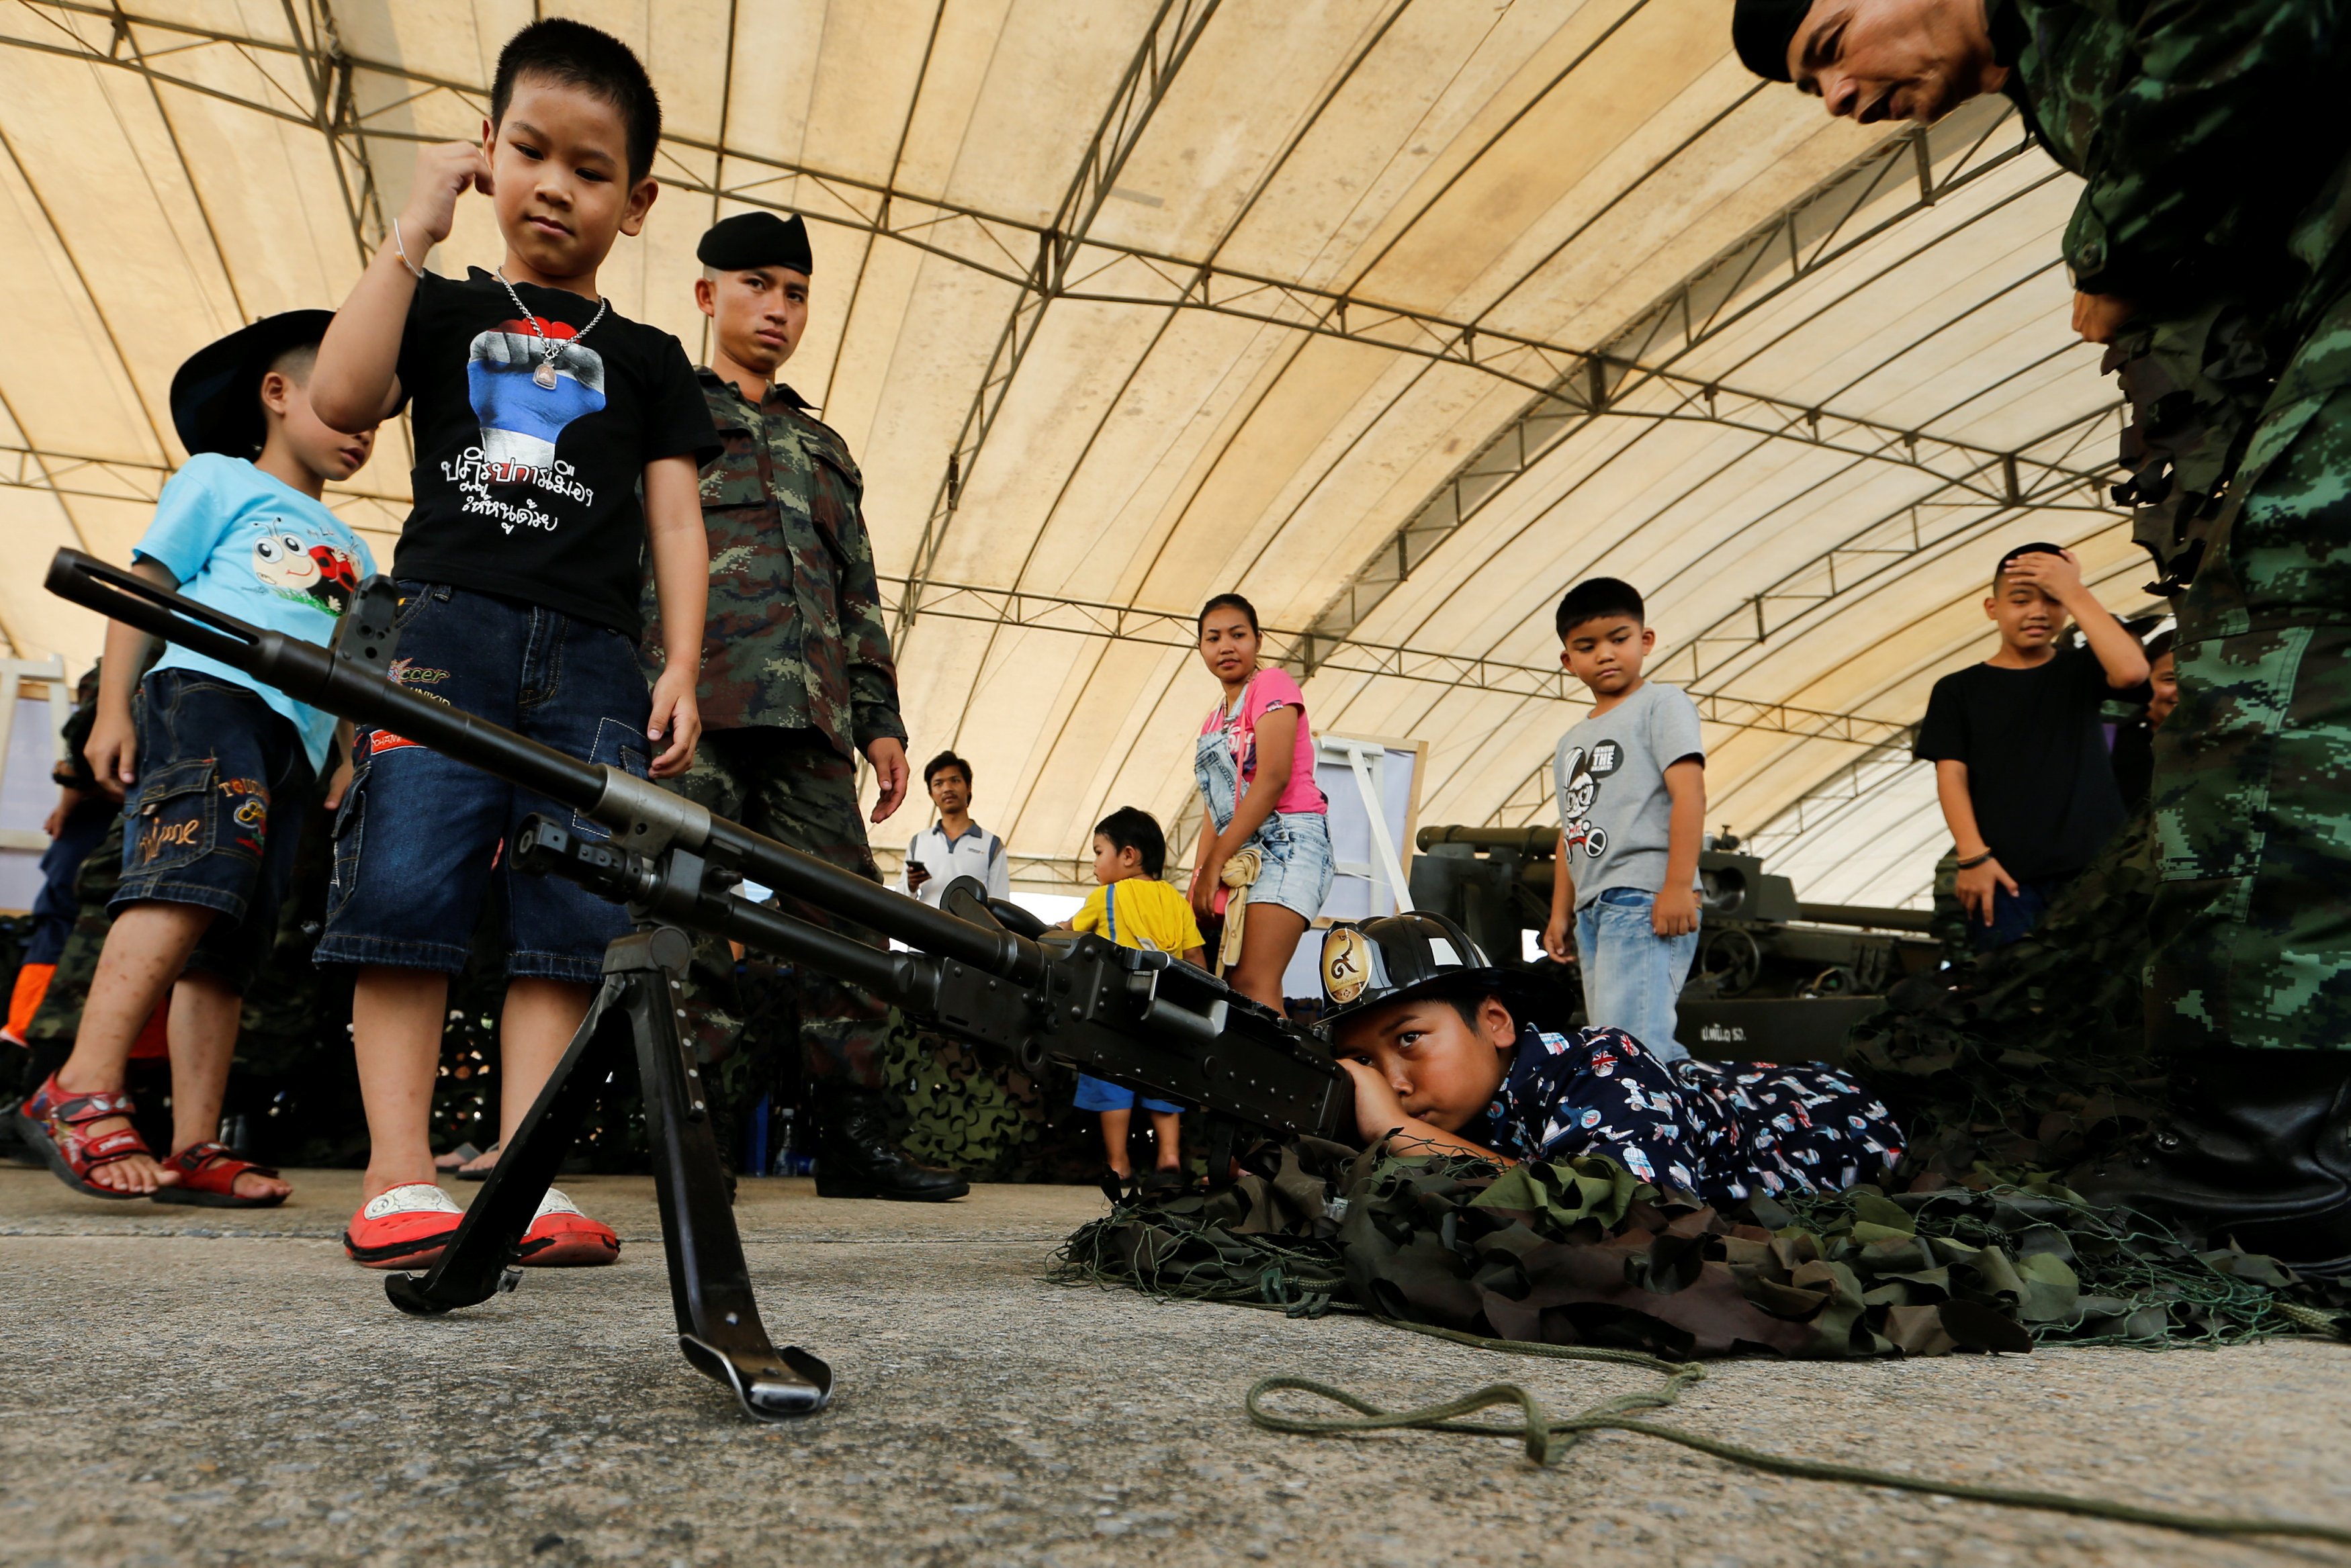 الأطفال يلعبون بالأسلحة خلال احتفالات يوم الطفل فى مقر الحكومة التايلاندية